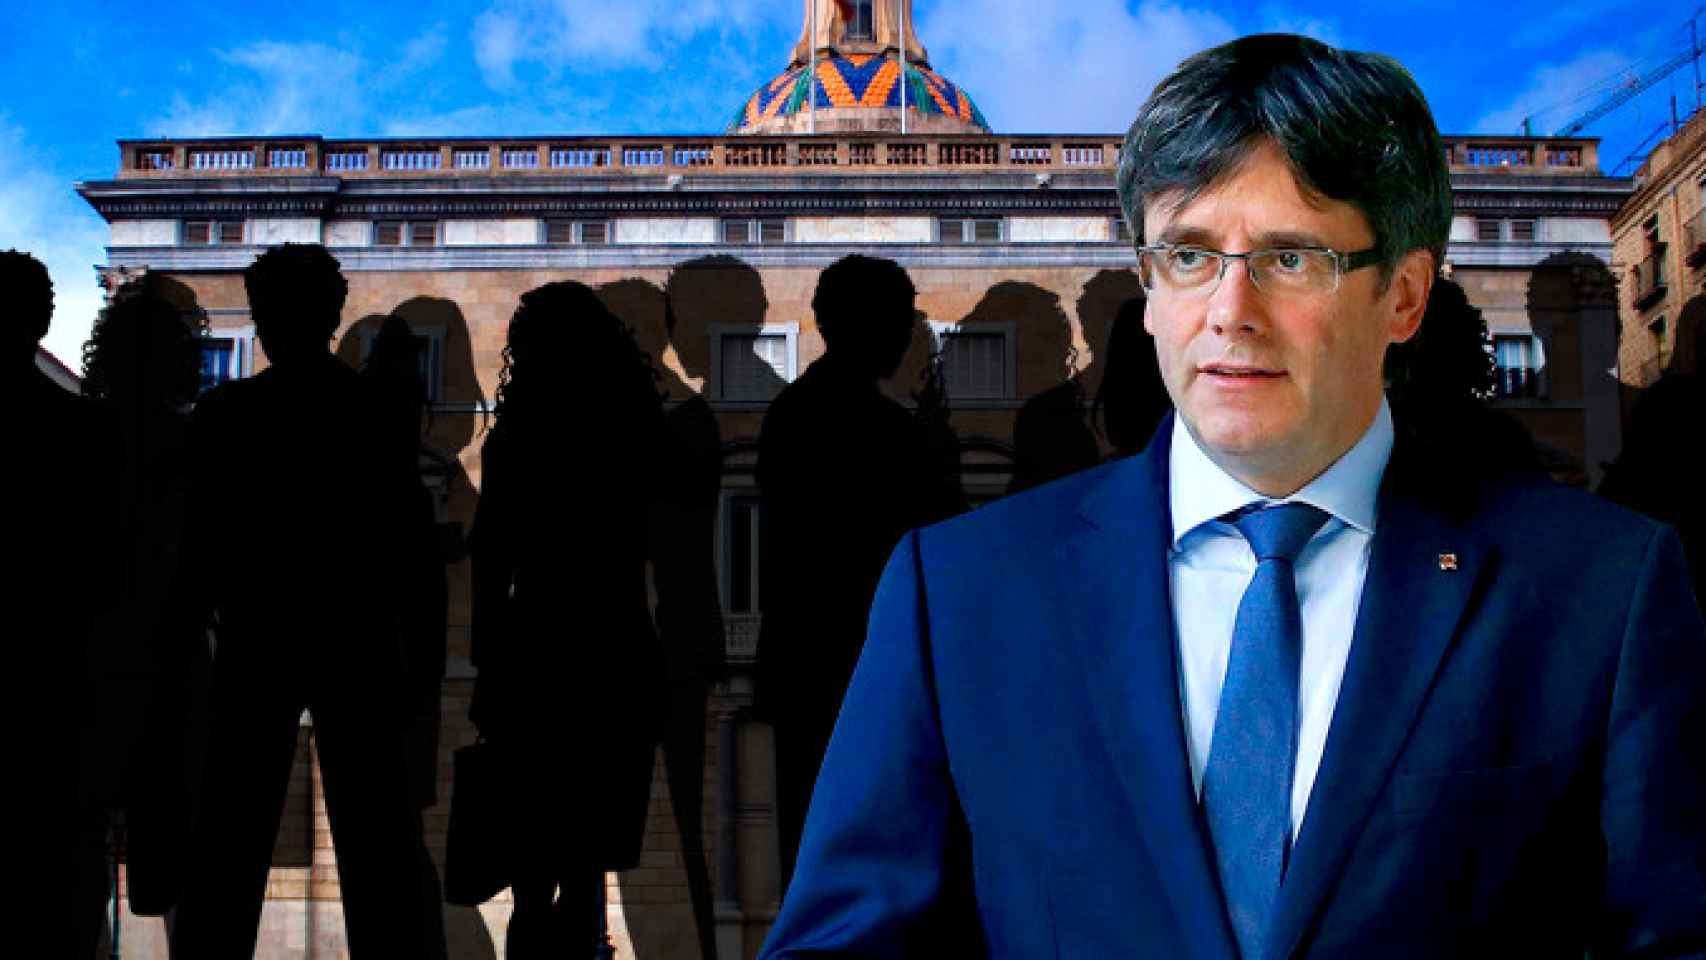 Carles Puigdemont y siluetas de ex cargos del Govern ante la Generalitat / FOTOMONTAJE DE CG